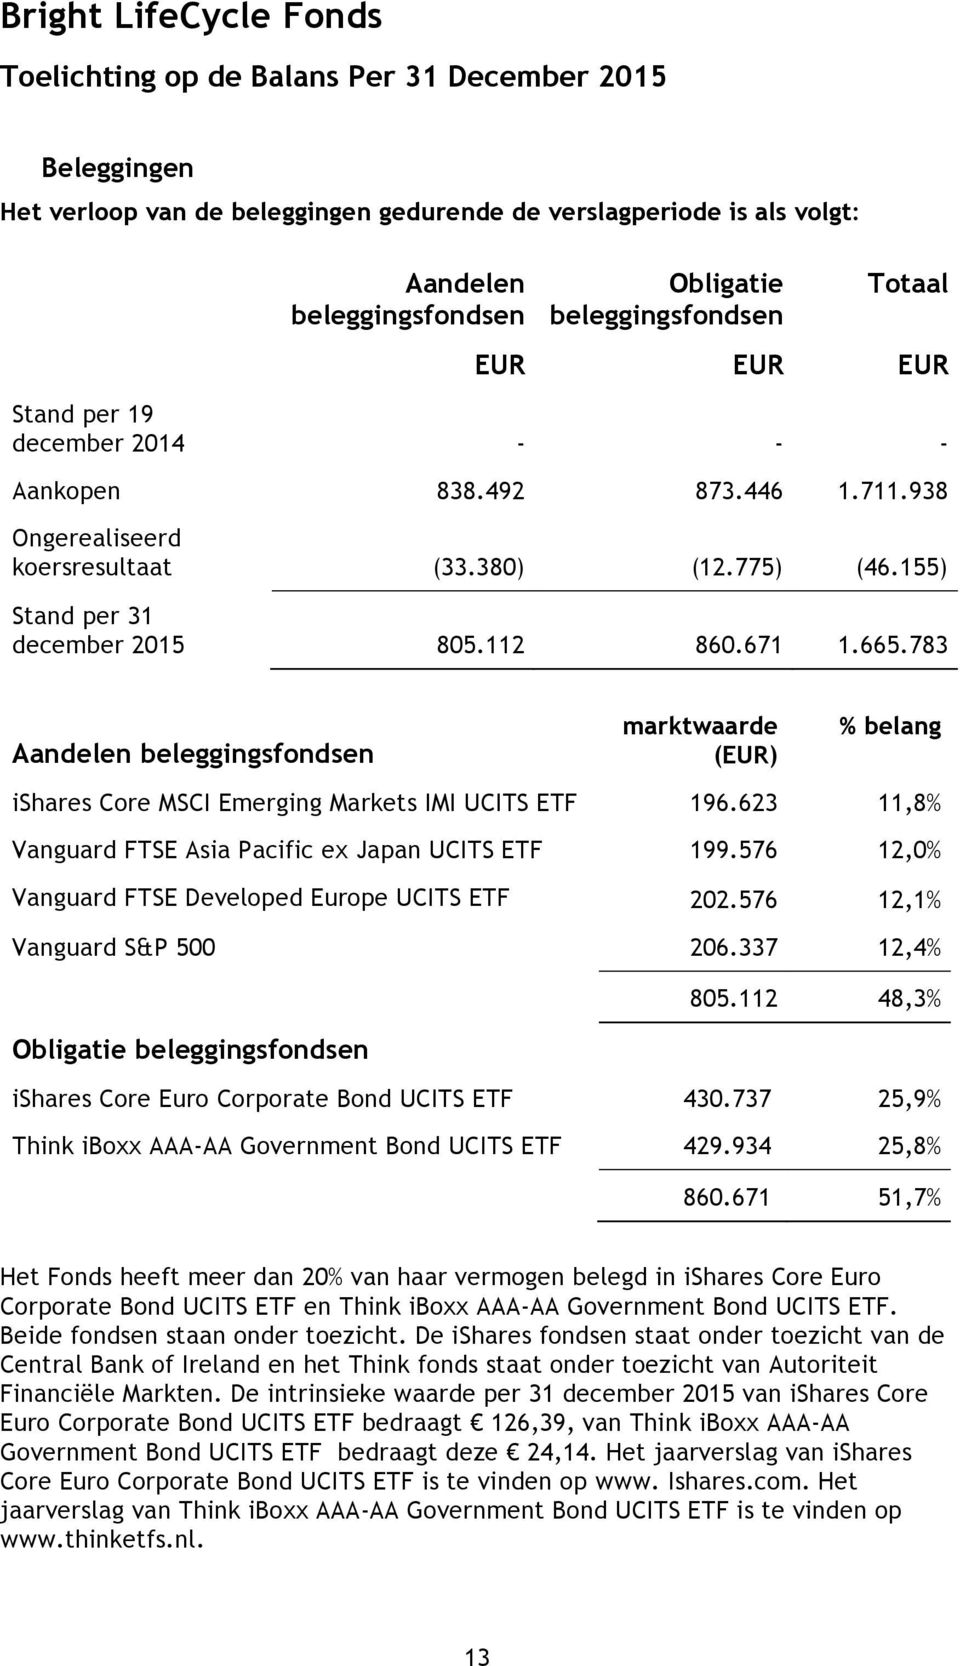 783 Aandelen beleggingsfondsen marktwaarde () % belang ishares Core MSCI Emerging Markets IMI UCITS ETF 196.623 11,8% Vanguard FTSE Asia Pacific ex Japan UCITS ETF 199.